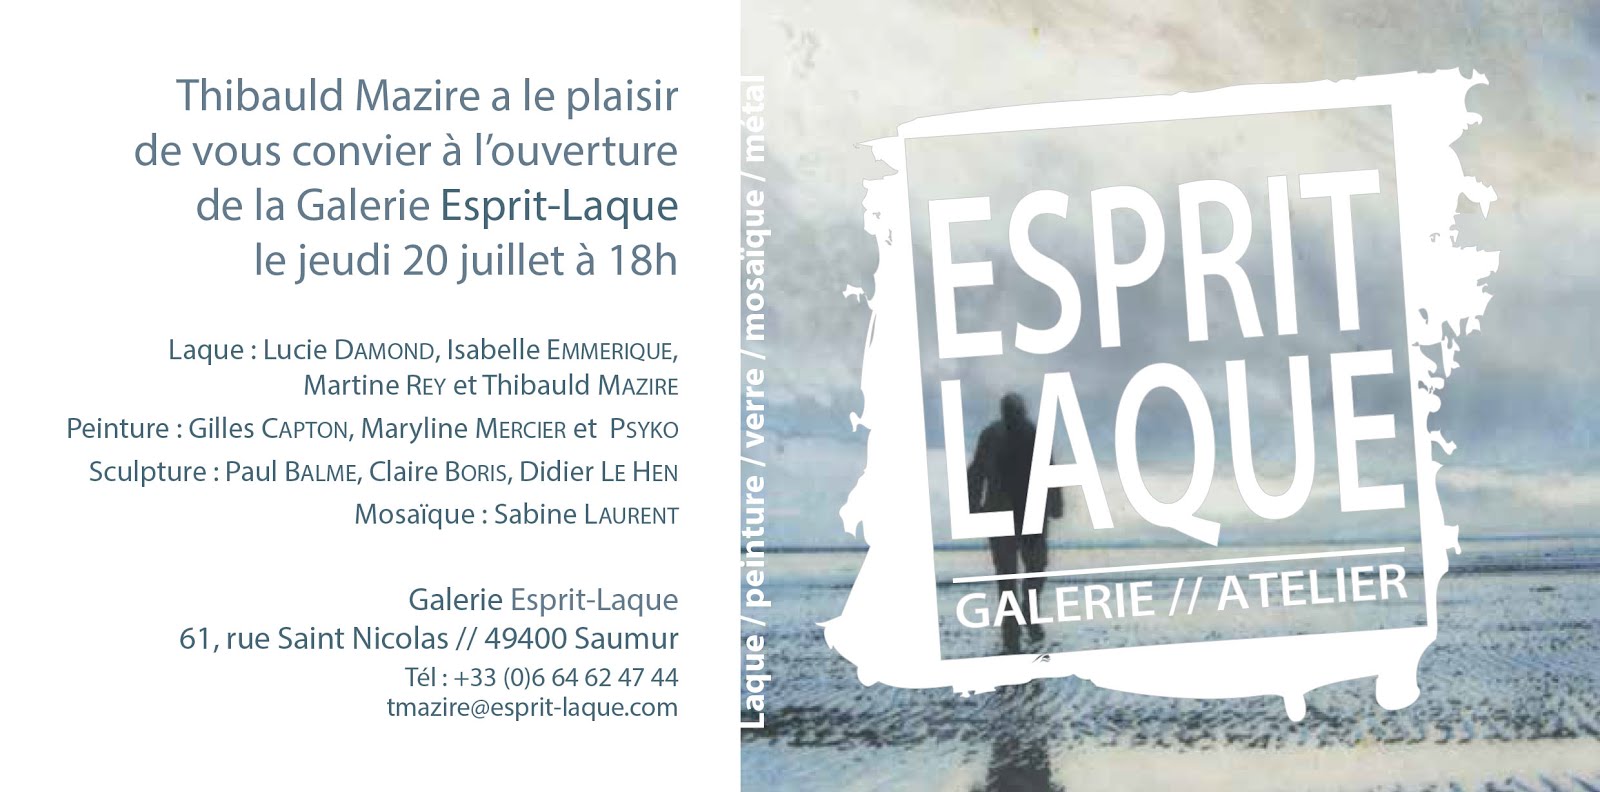 NOUVEAU À SAUMUR : CAPTON PARMI LES ARTISTES INVITÉS À L'OUVERTURE DE LA GALERIE "ESPRIT-LAQUE"